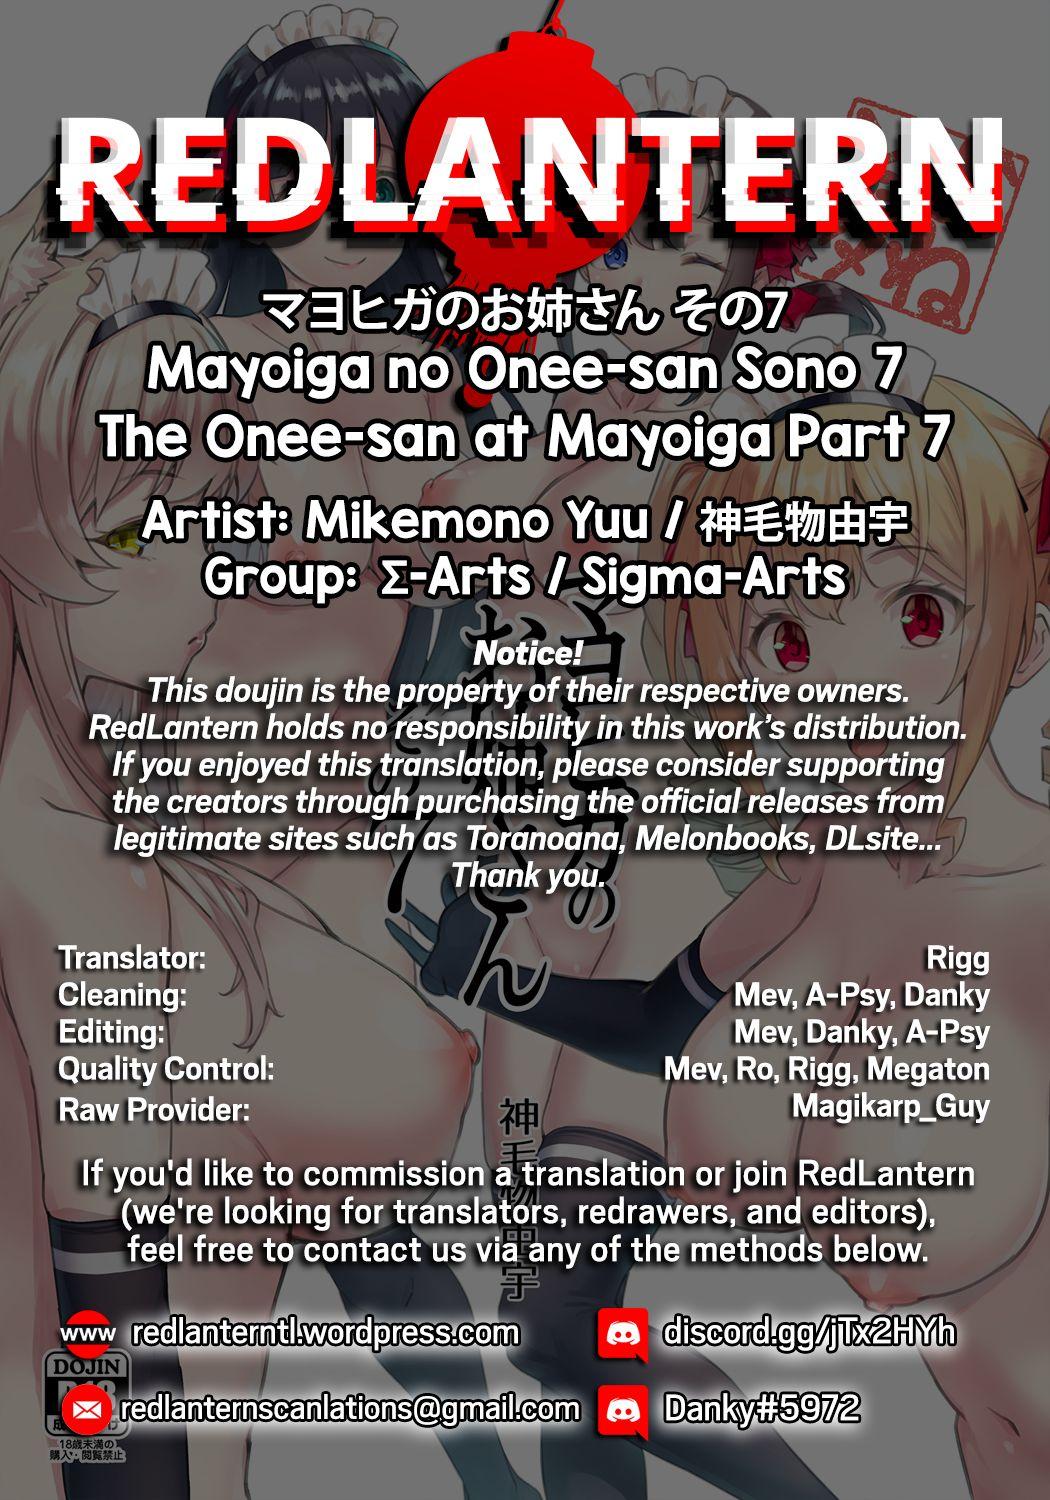 Mayoiga no Oneesan at Mayoiga Part 7 2